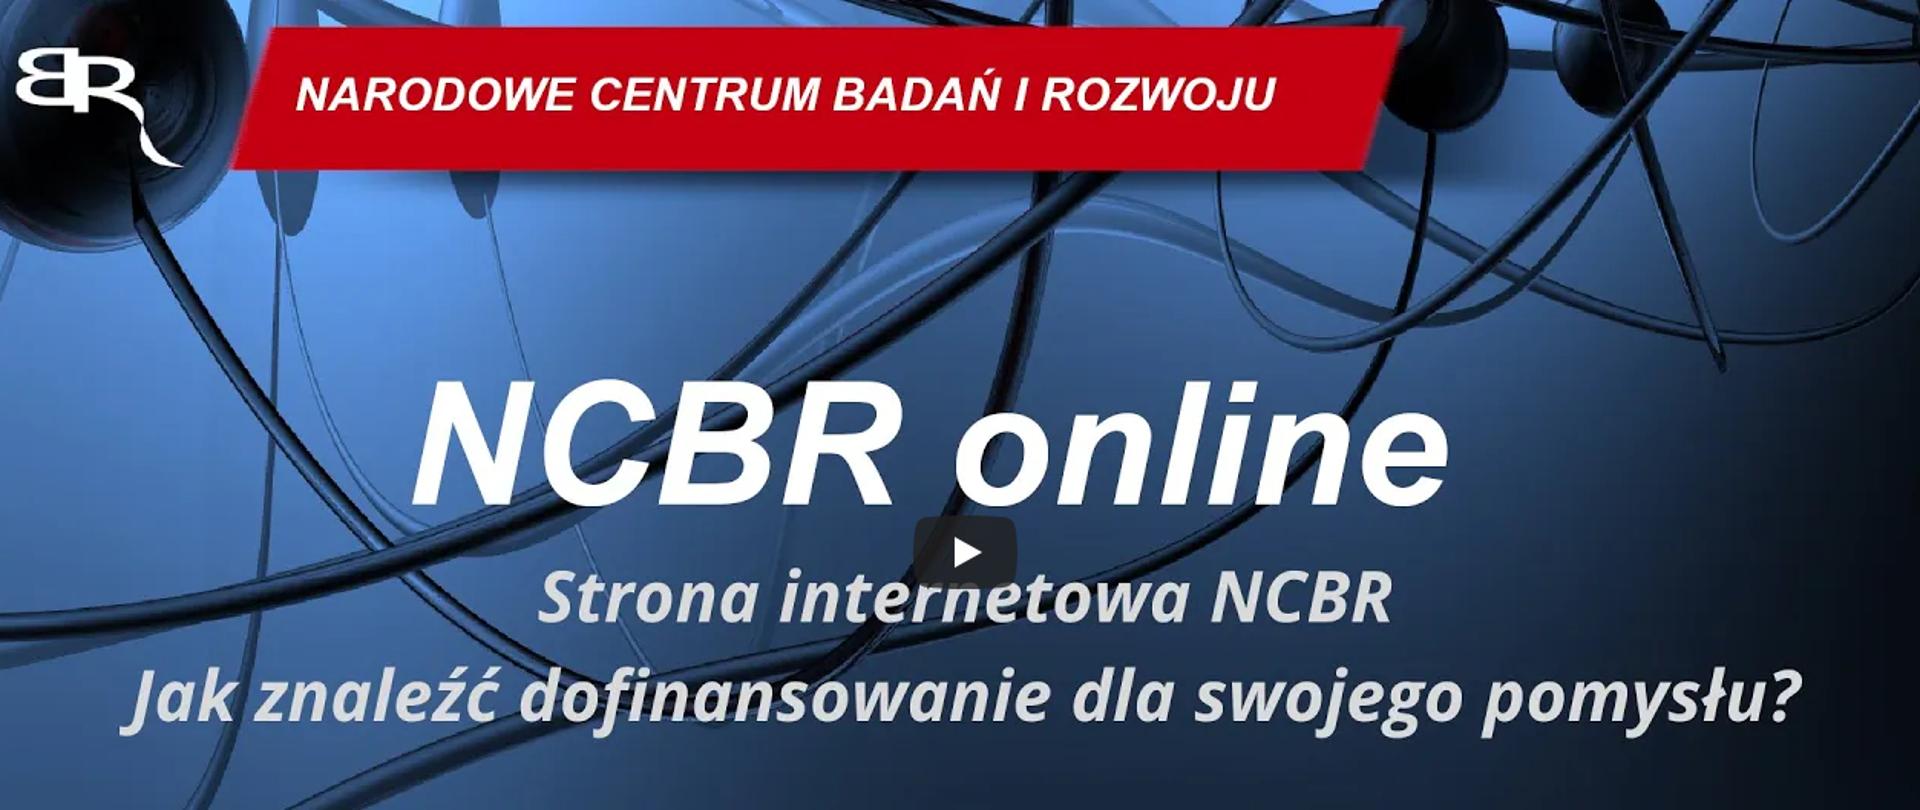 NCBR online: Strona internetowa NCBR. Jak znaleźć dofinansowanie dla swojego pomysłu?